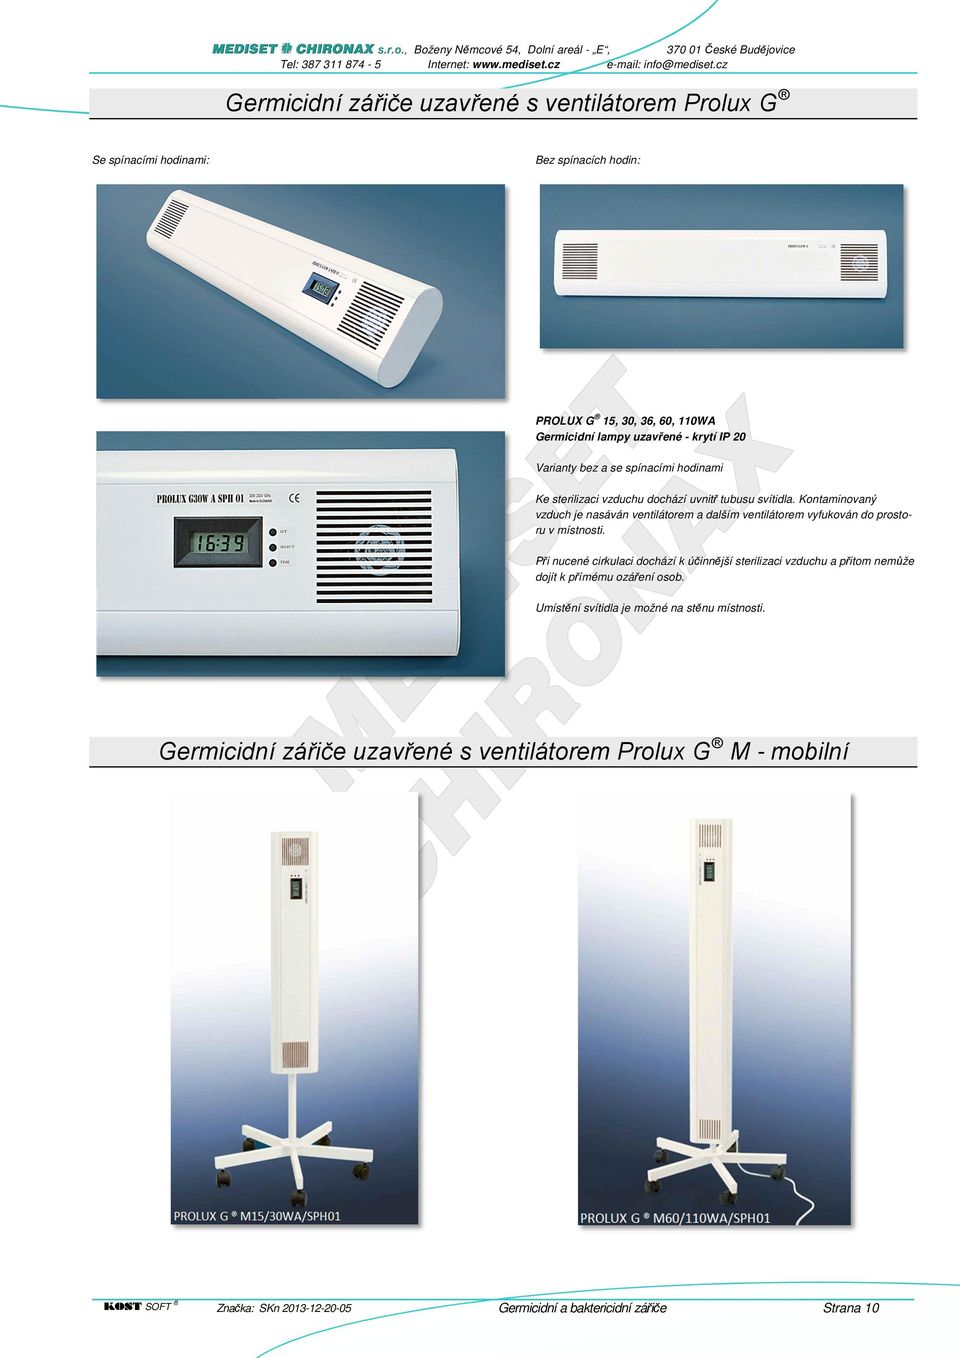 Kontaminovaný vzduch je nasáván ventilátorem a dalším ventilátorem vyfukován do prostoru v místnosti.